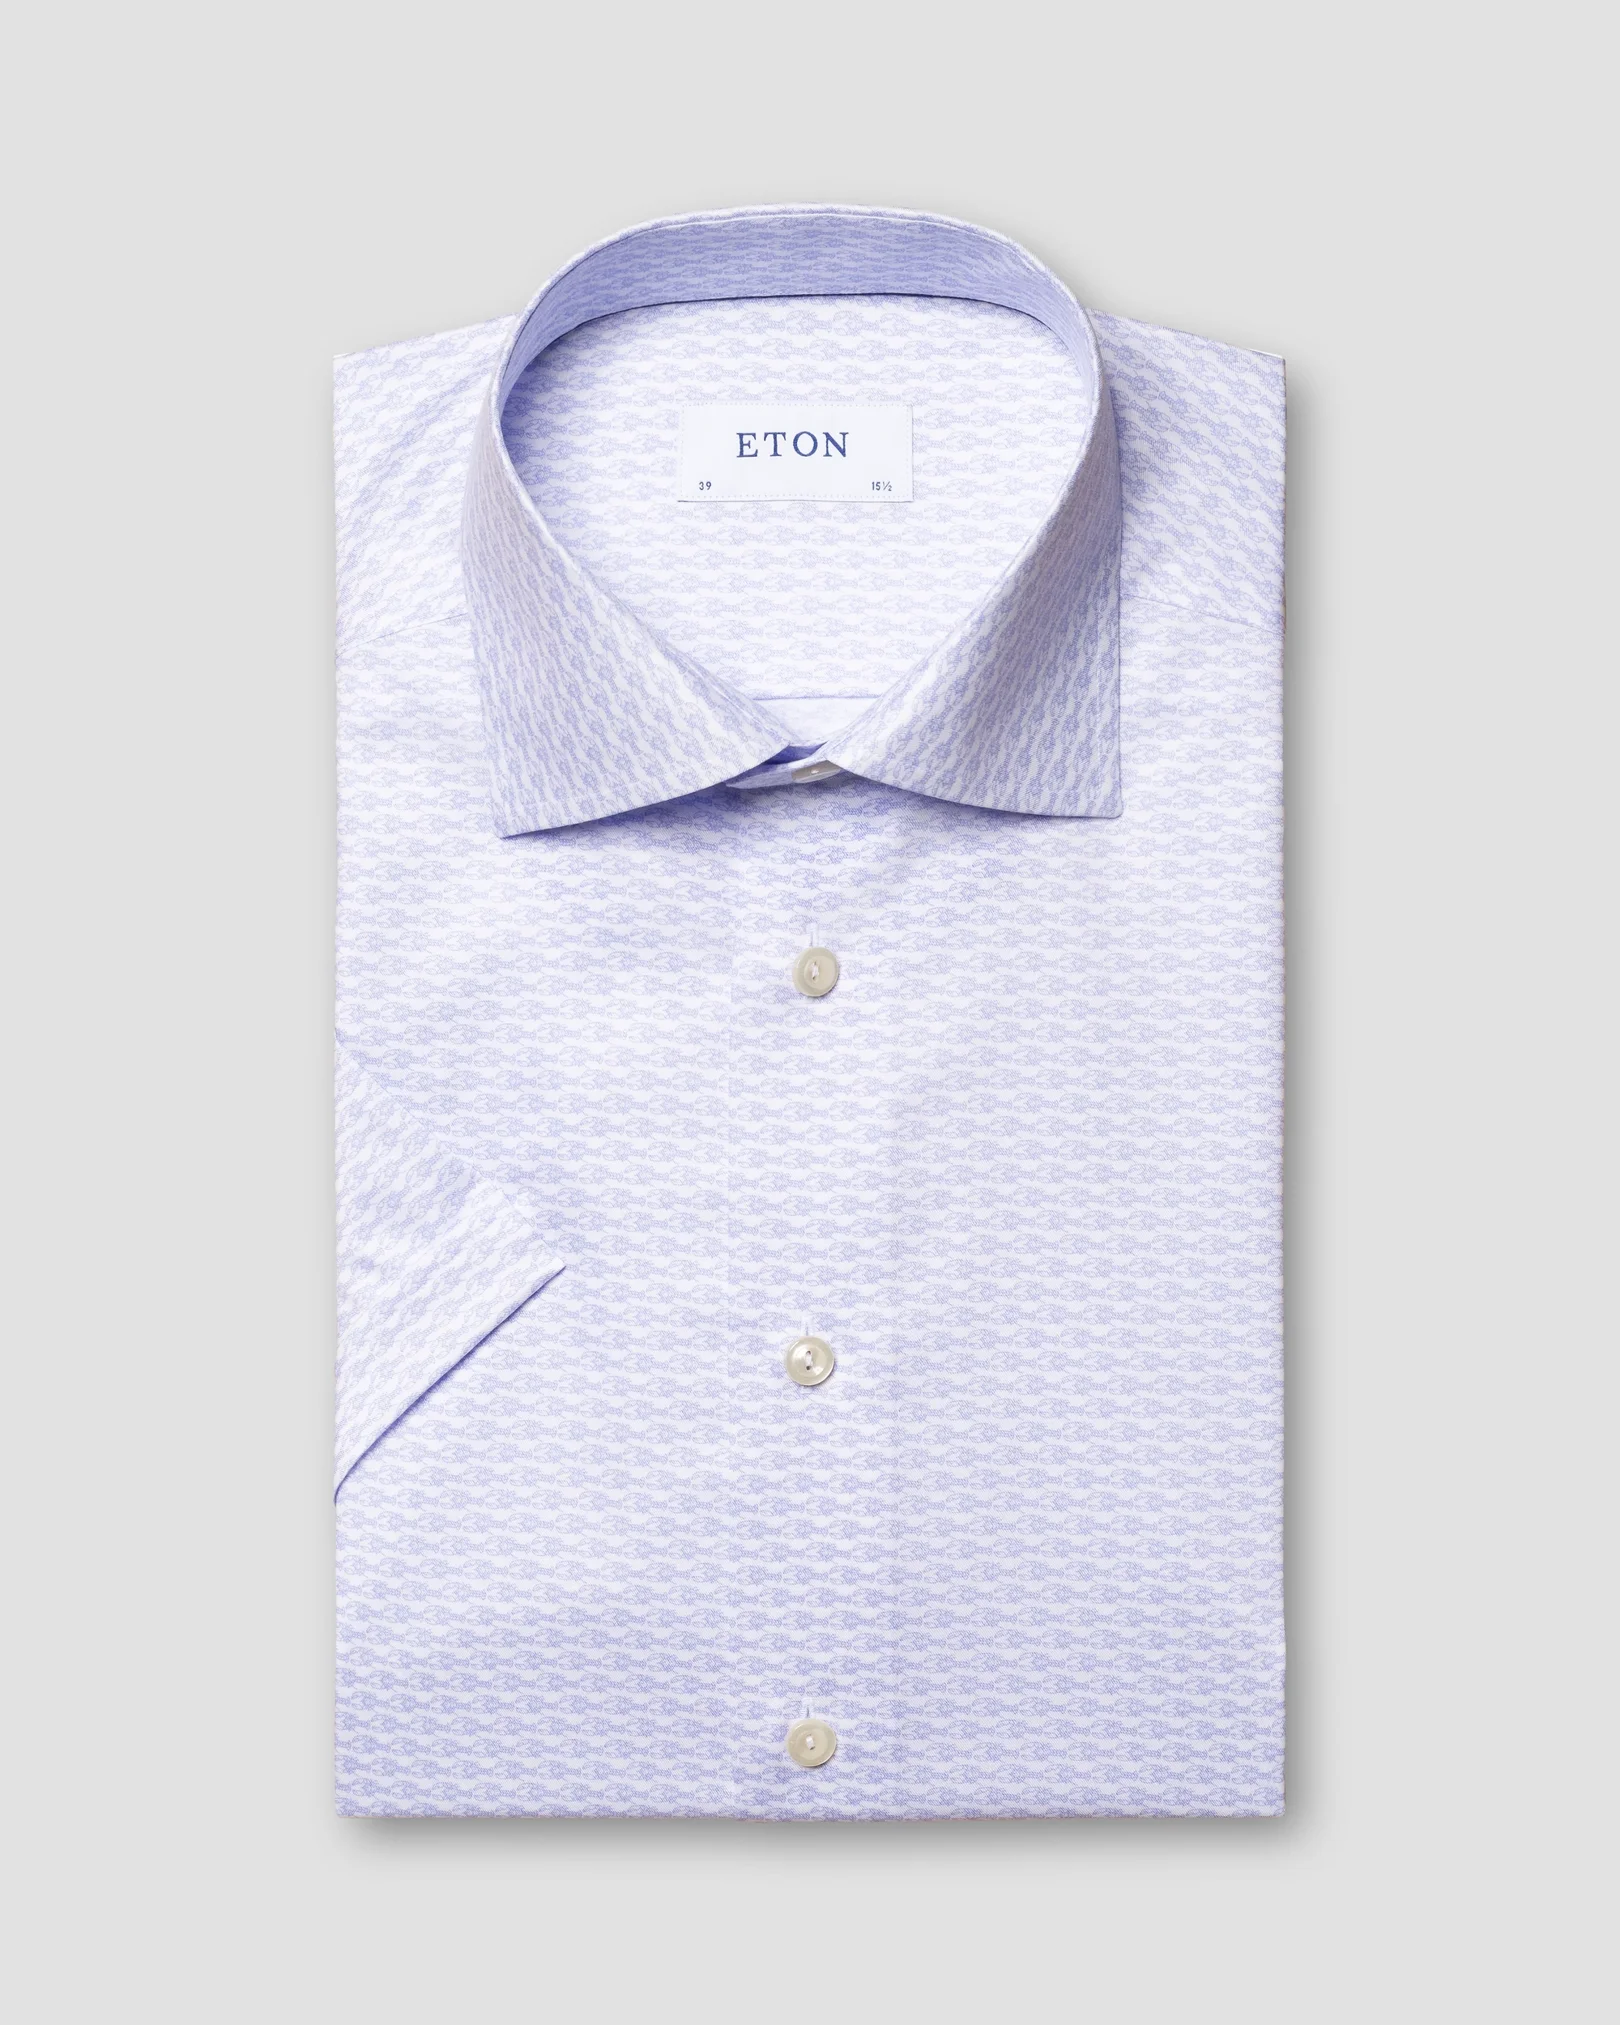 Eton - blue crayfish print signature twill shirt short sleeve